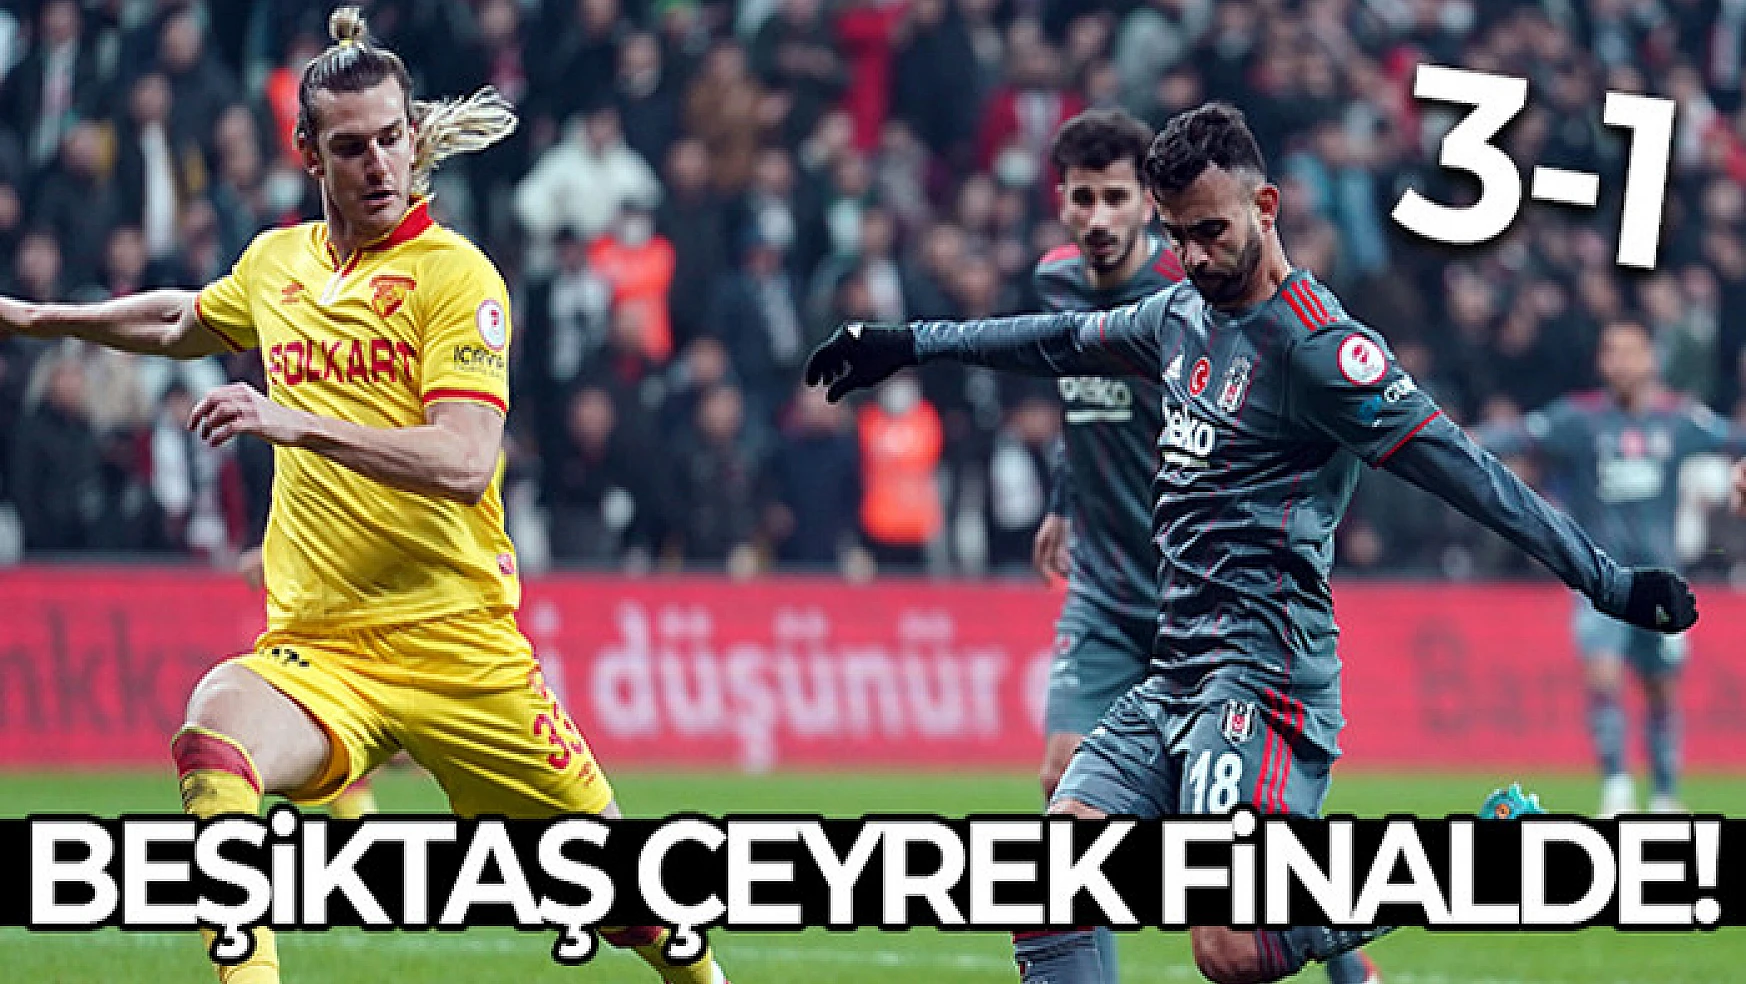 Beşiktaş çeyrek finalde!